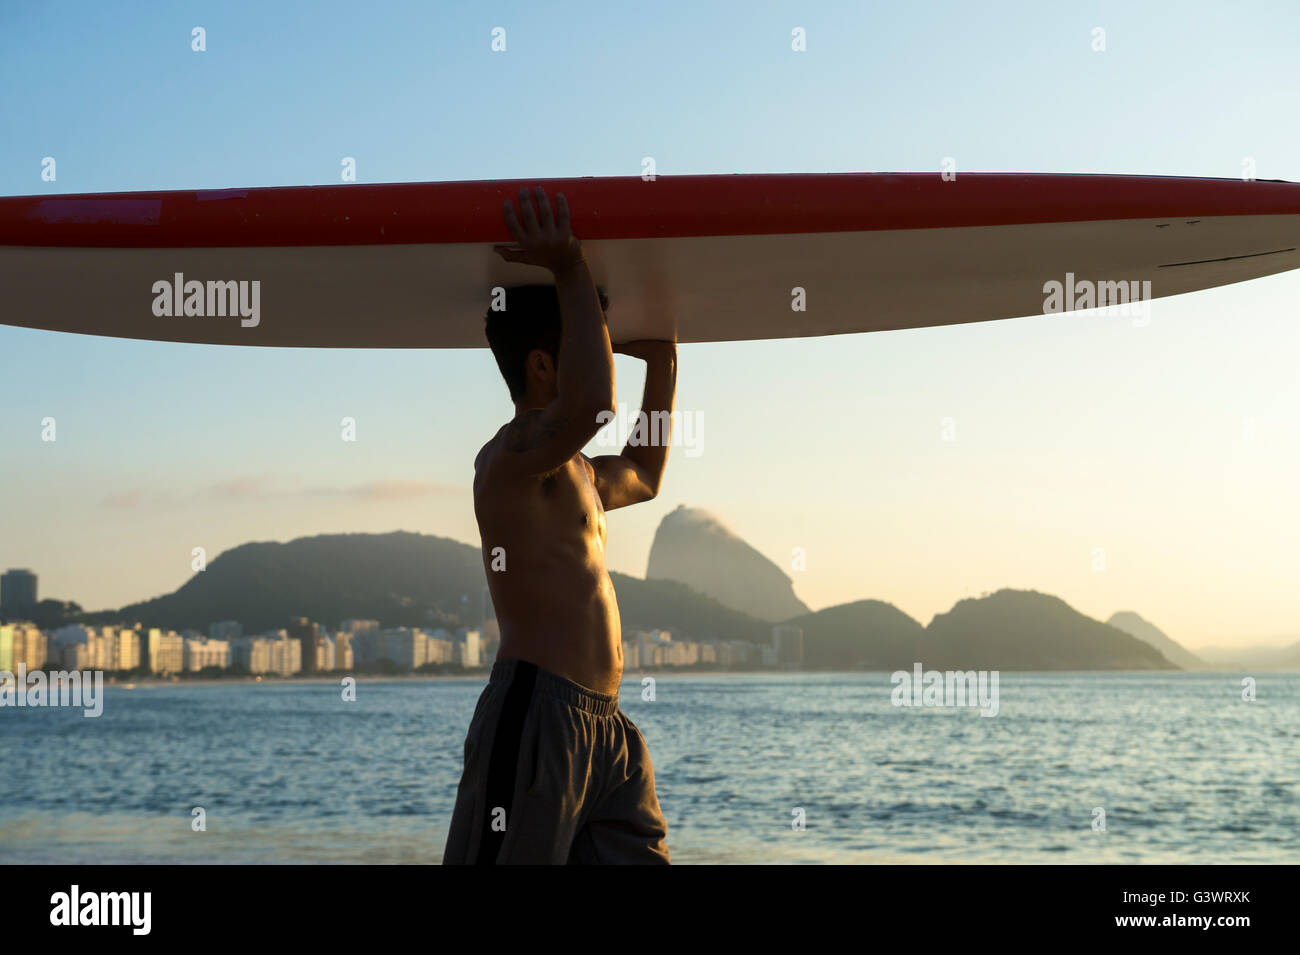 RIO DE JANEIRO - APRIL 5, 2016: A young Brazilian man on Copacabana Beach balances a surfboard on his head at sunrise. Stock Photo